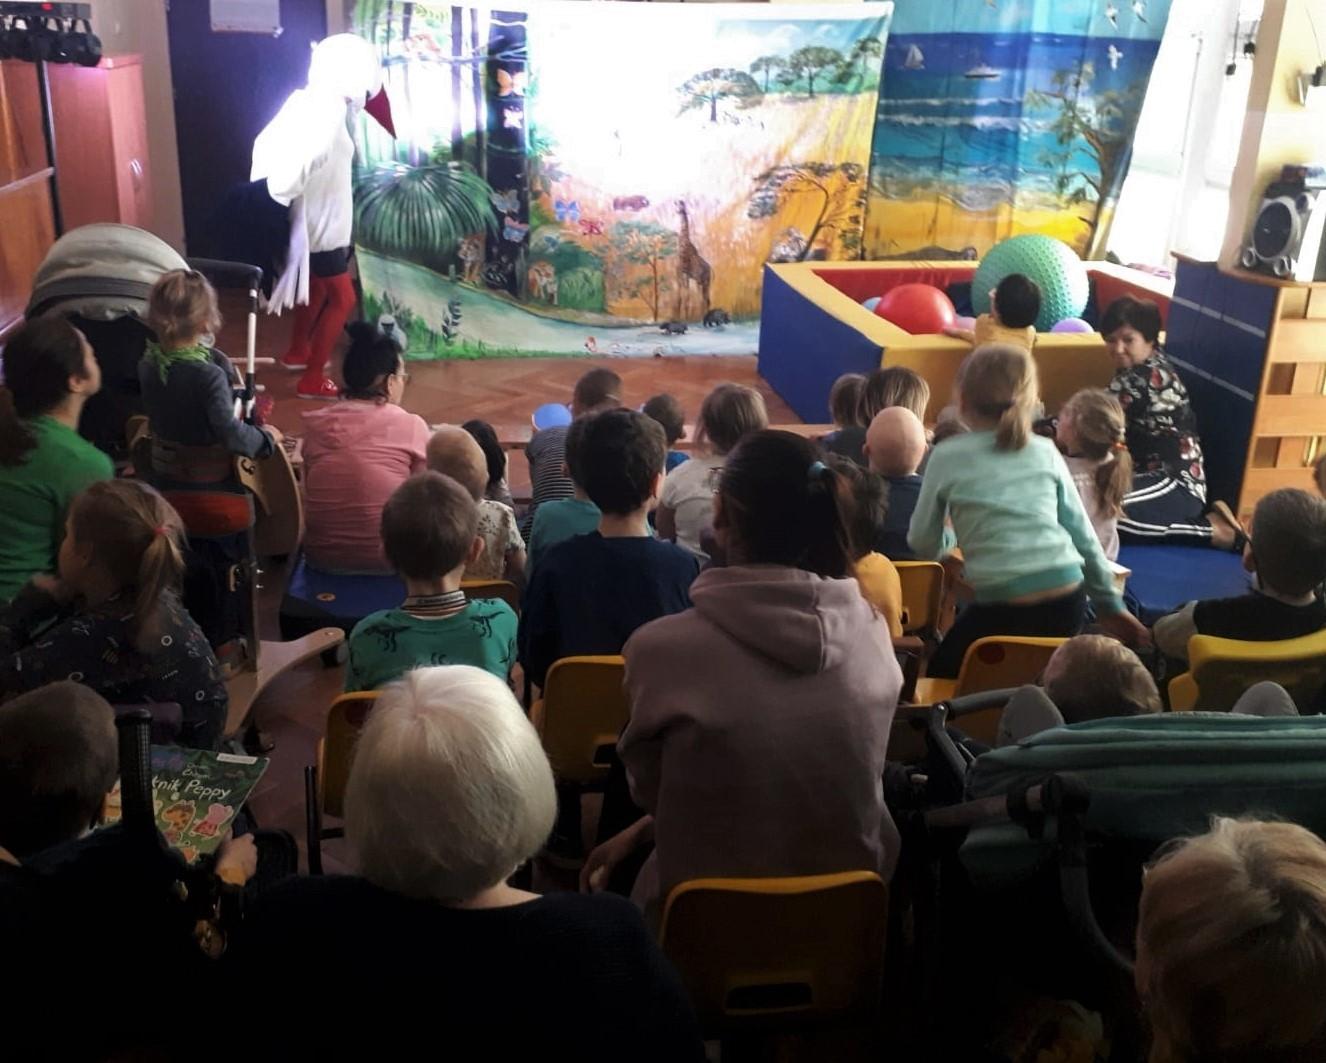 Dzieci oglądają przedstawienie teatralne z bocianem